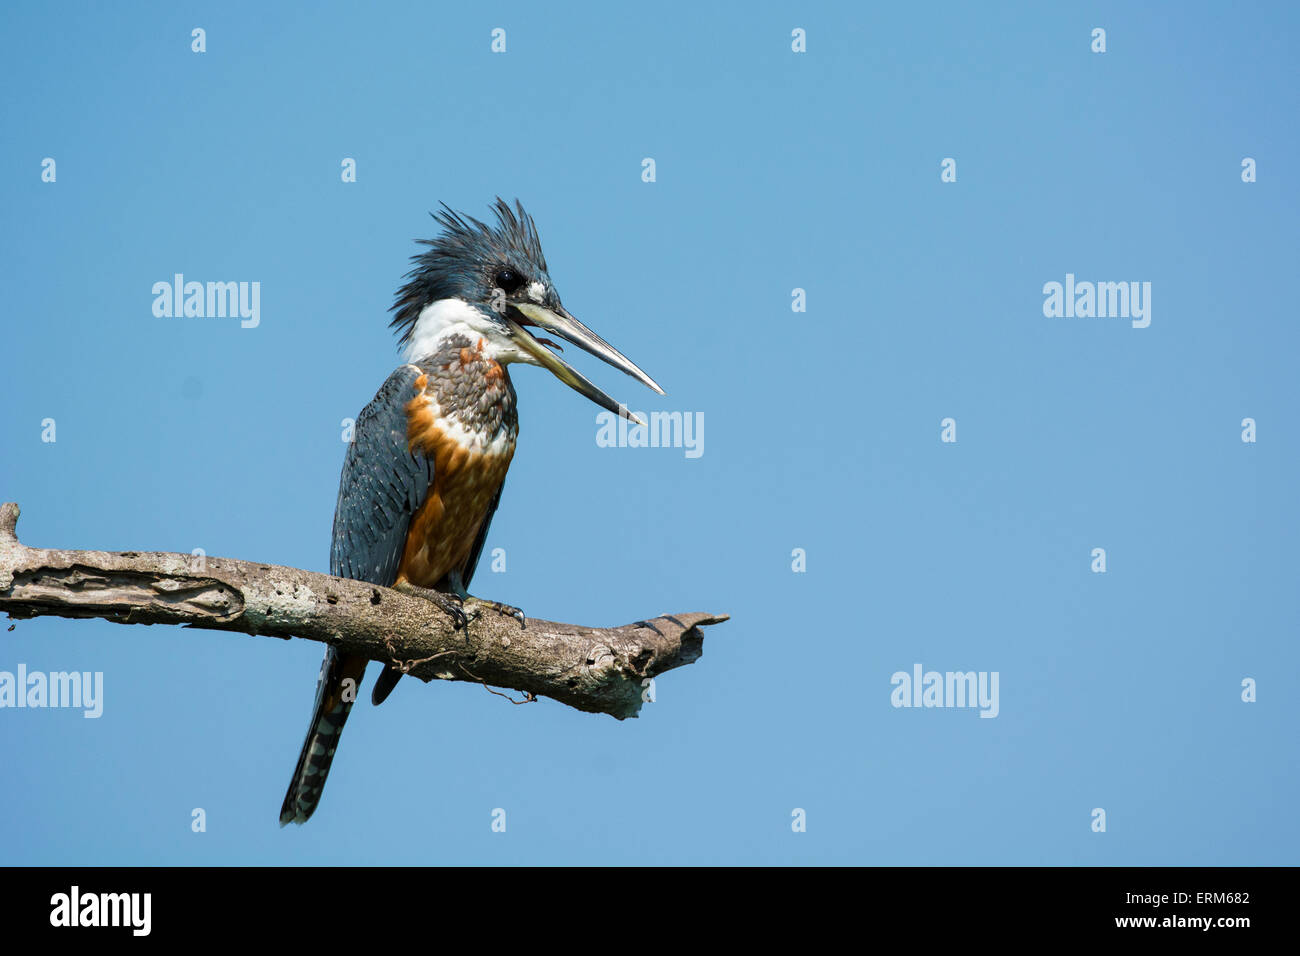 Di inanellare Kingfisher, Megaceryle torquata, appollaiato su un ramo del Pantanal, Mato Grosso, Brasile, Sud America Foto Stock